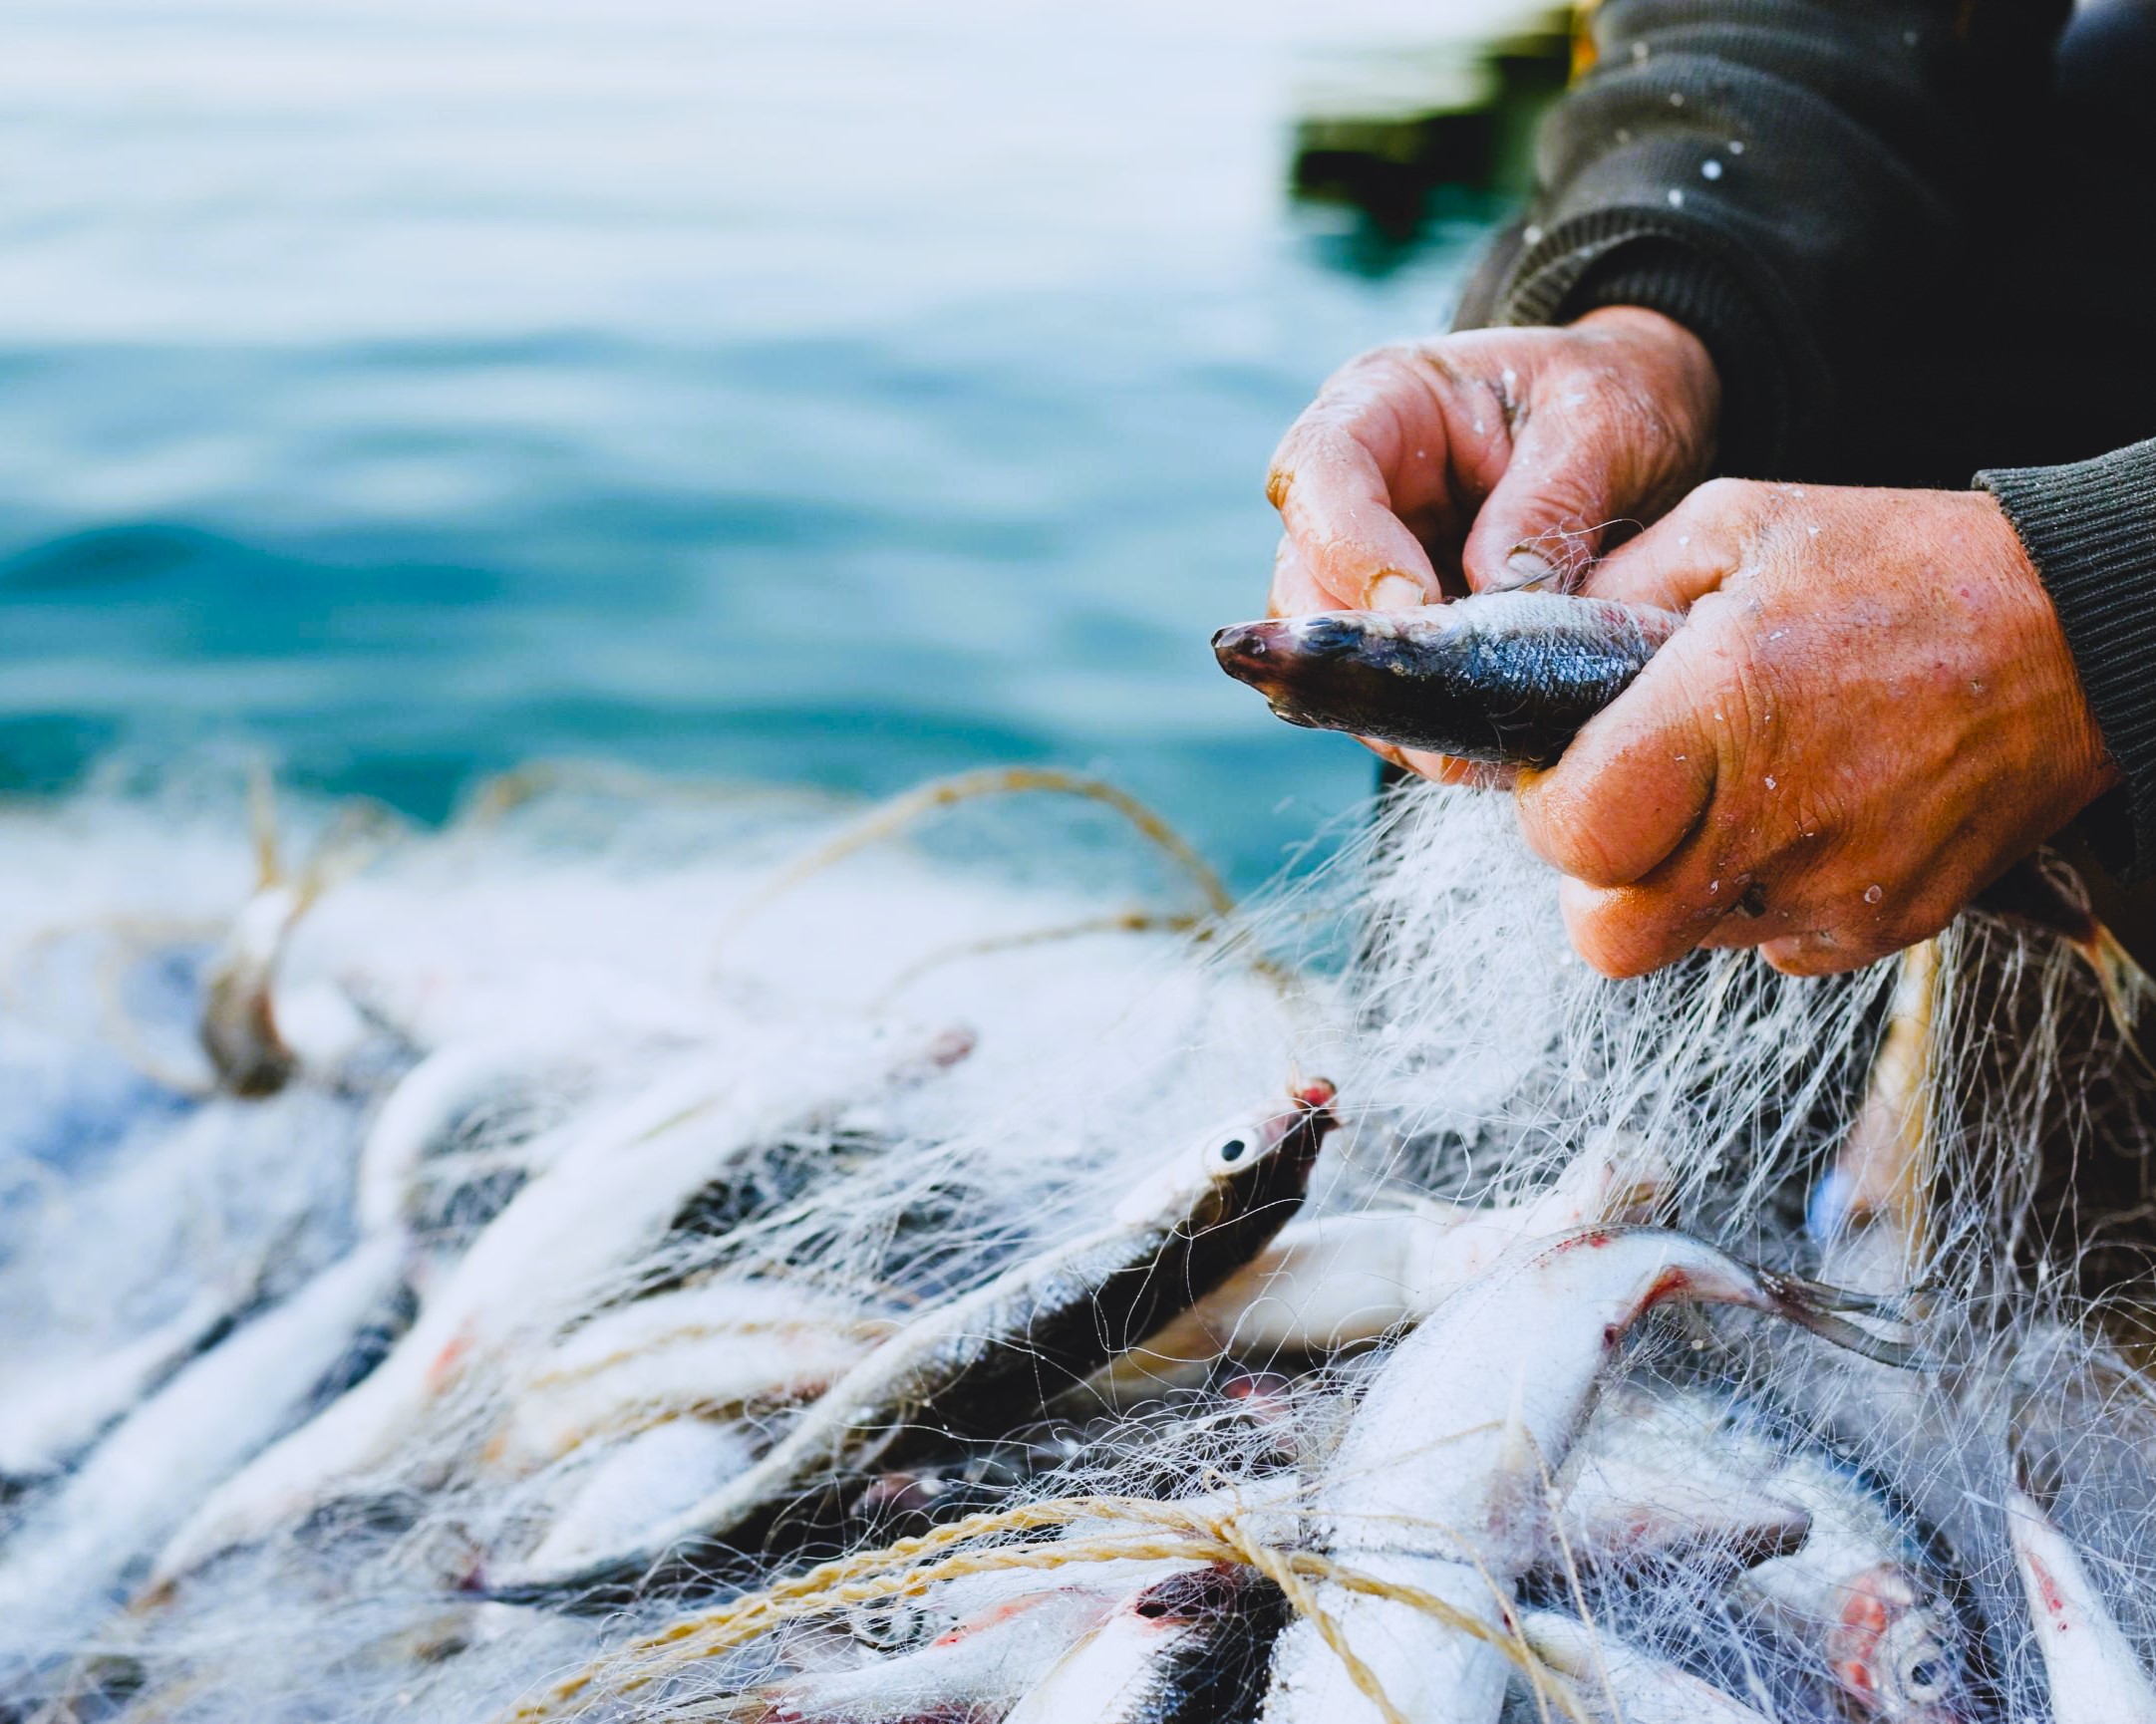 Максимизируйте свои шансы на улов: советы от экспертов по использованию конопли в рыболовстве